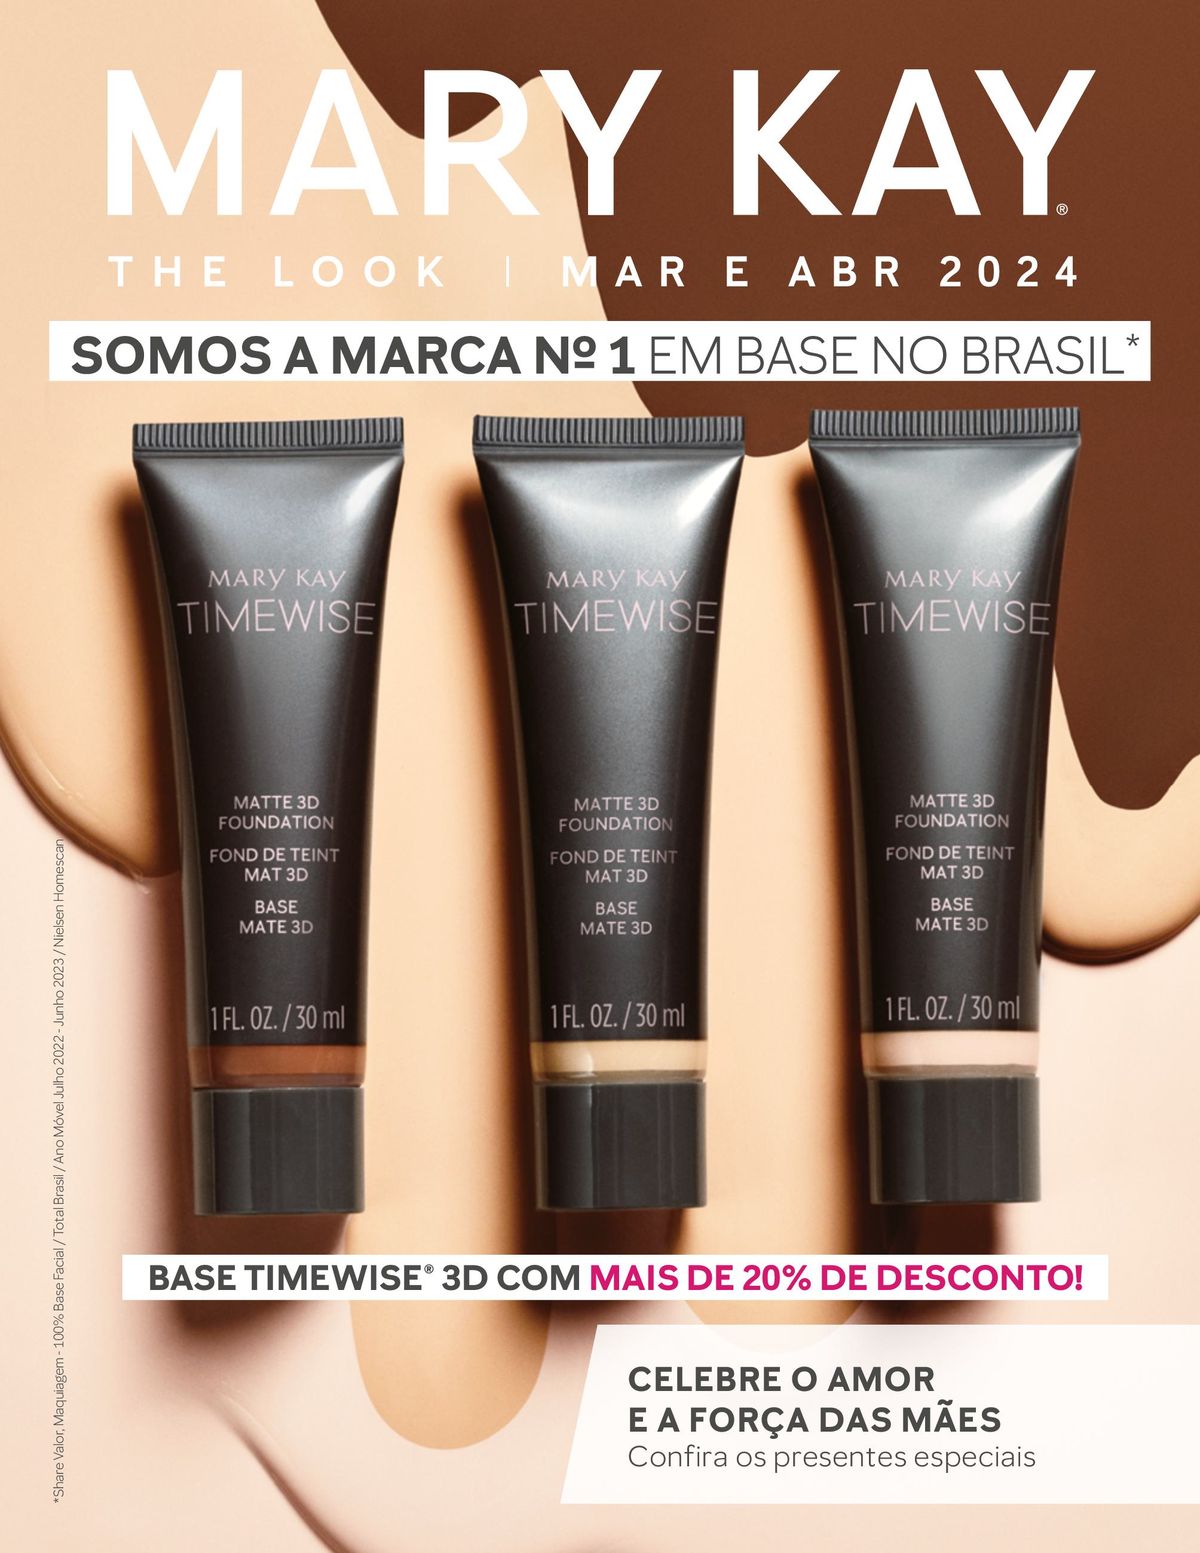 Promoção de Produtos de Maquiagem Mary Kay, The Look Março/Abril 2024, 01-04-2024, Mary Kay